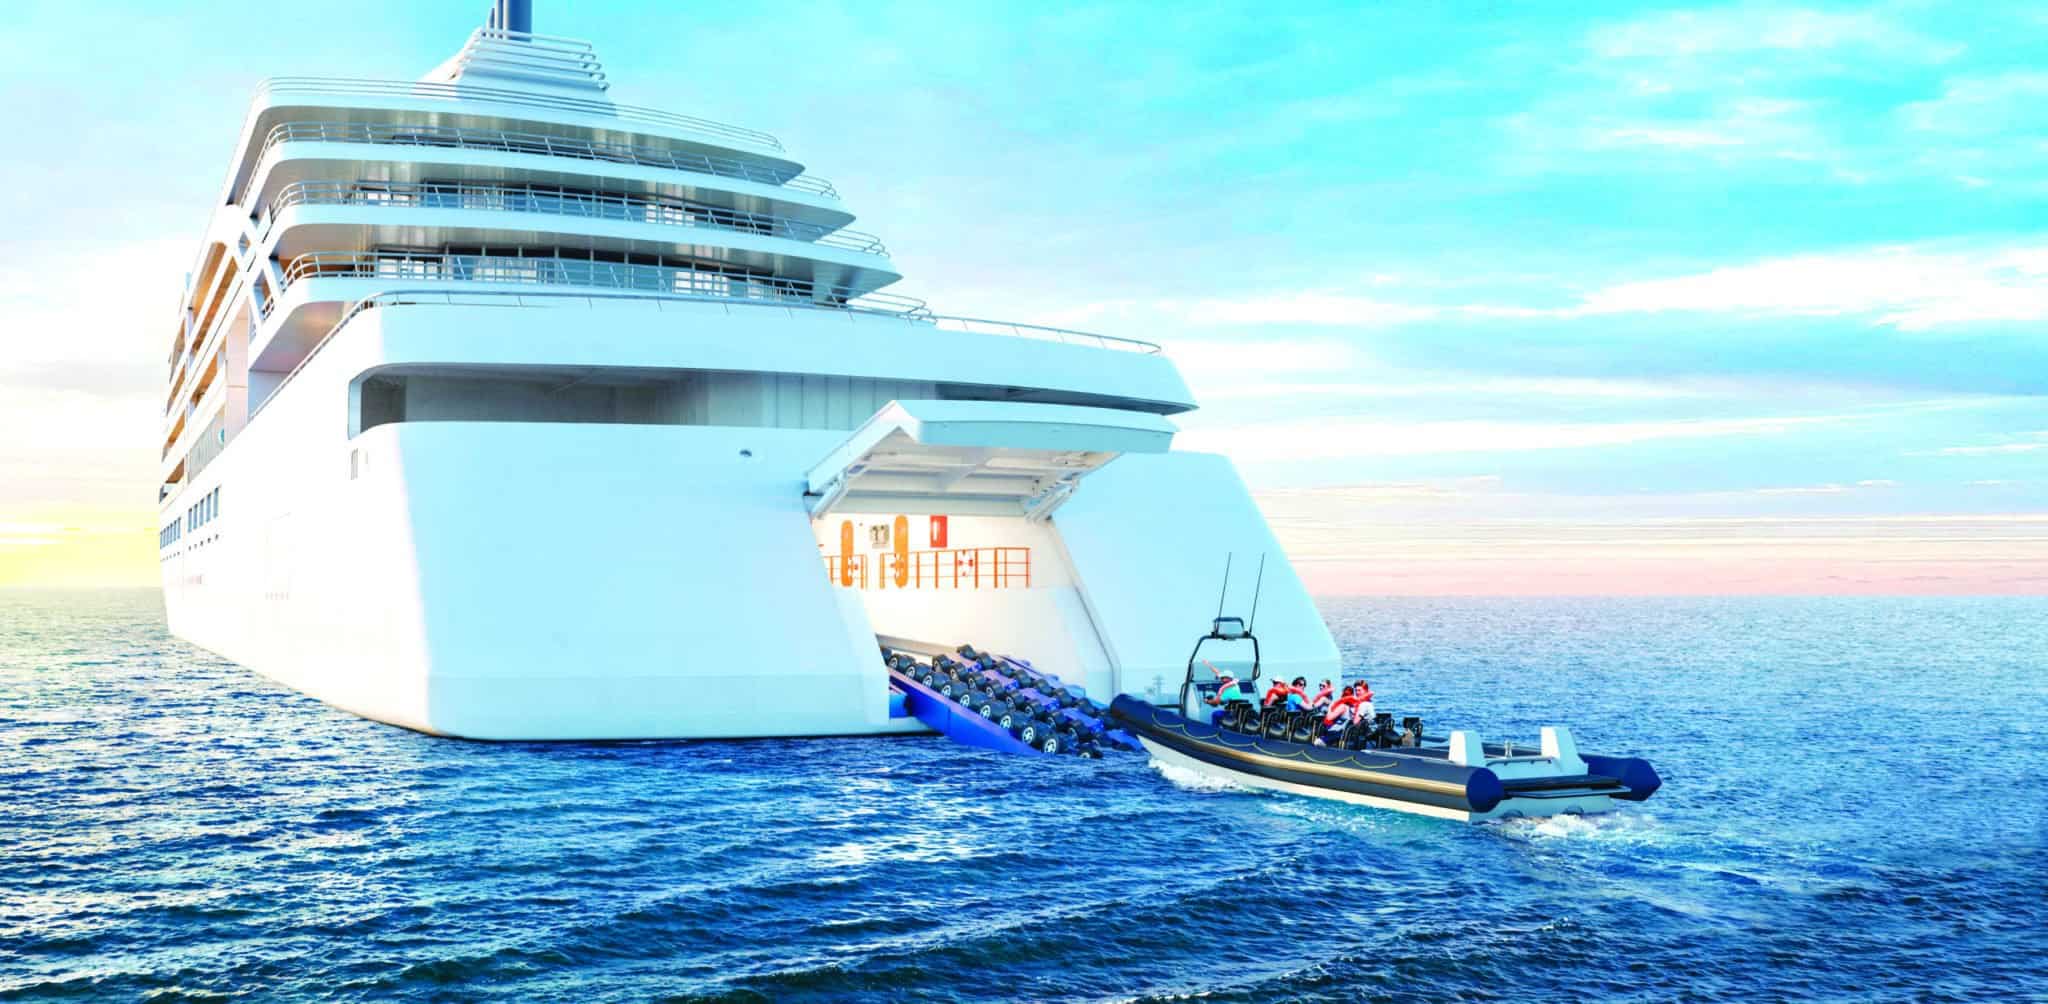 largest cruise ships 2022